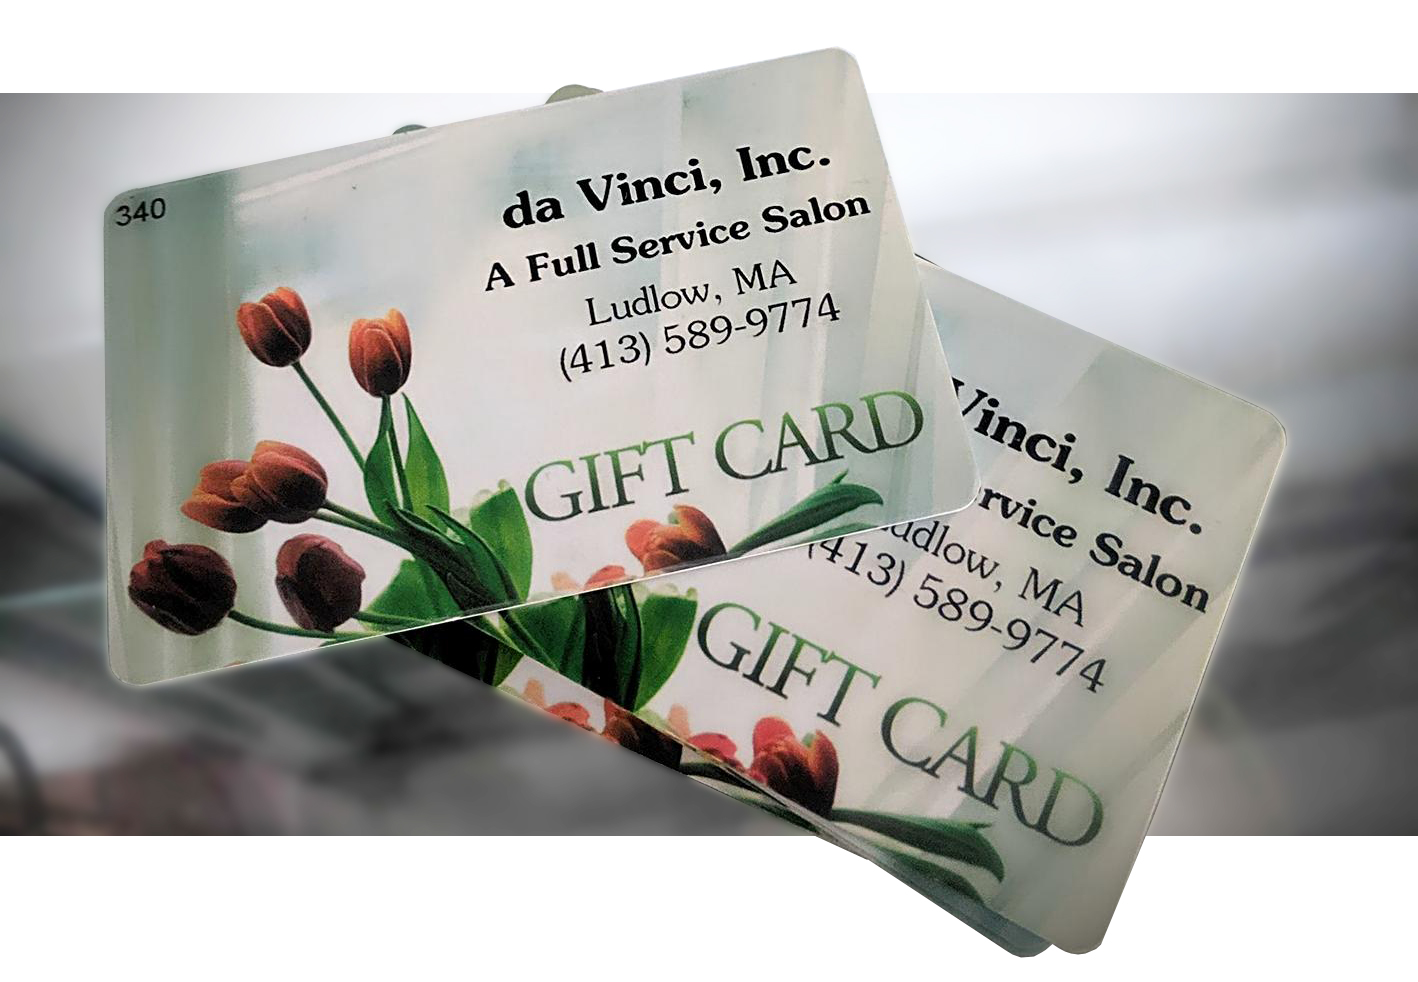 DaVinci Gift Card – DaVinci Salon and Spa